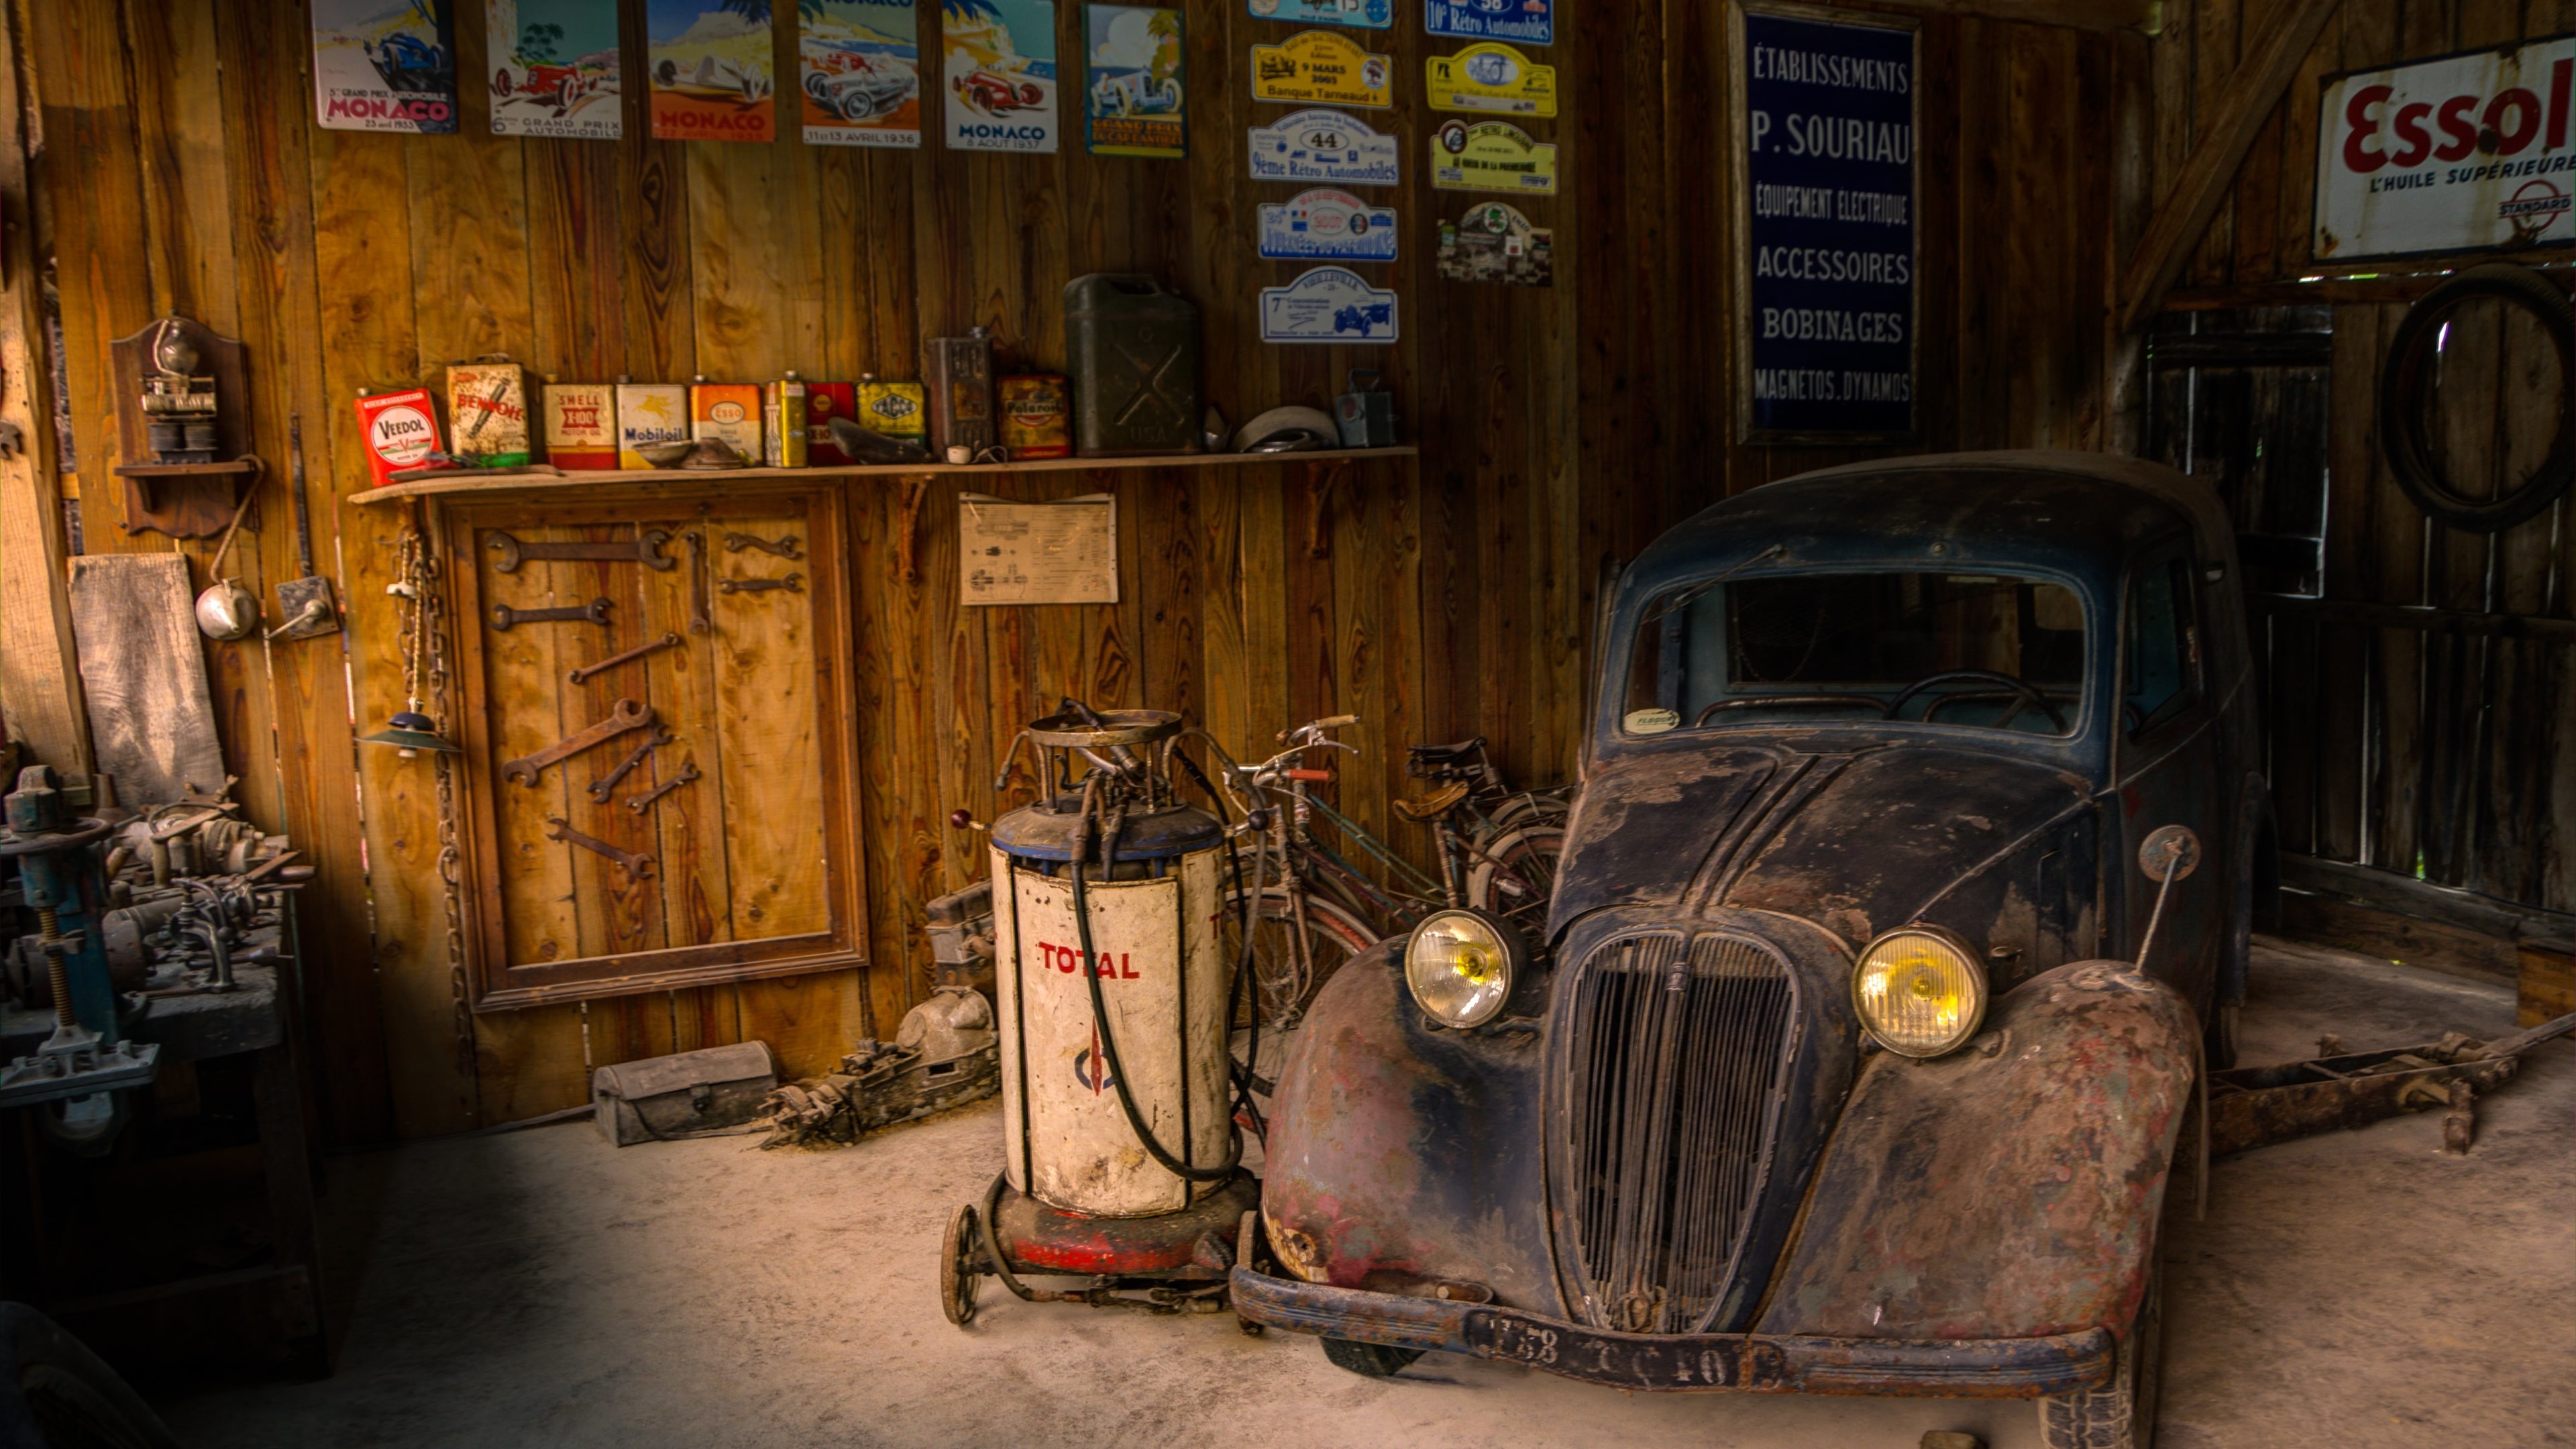 3840x2160 Rusty Old Car in a Rusty Old Garage